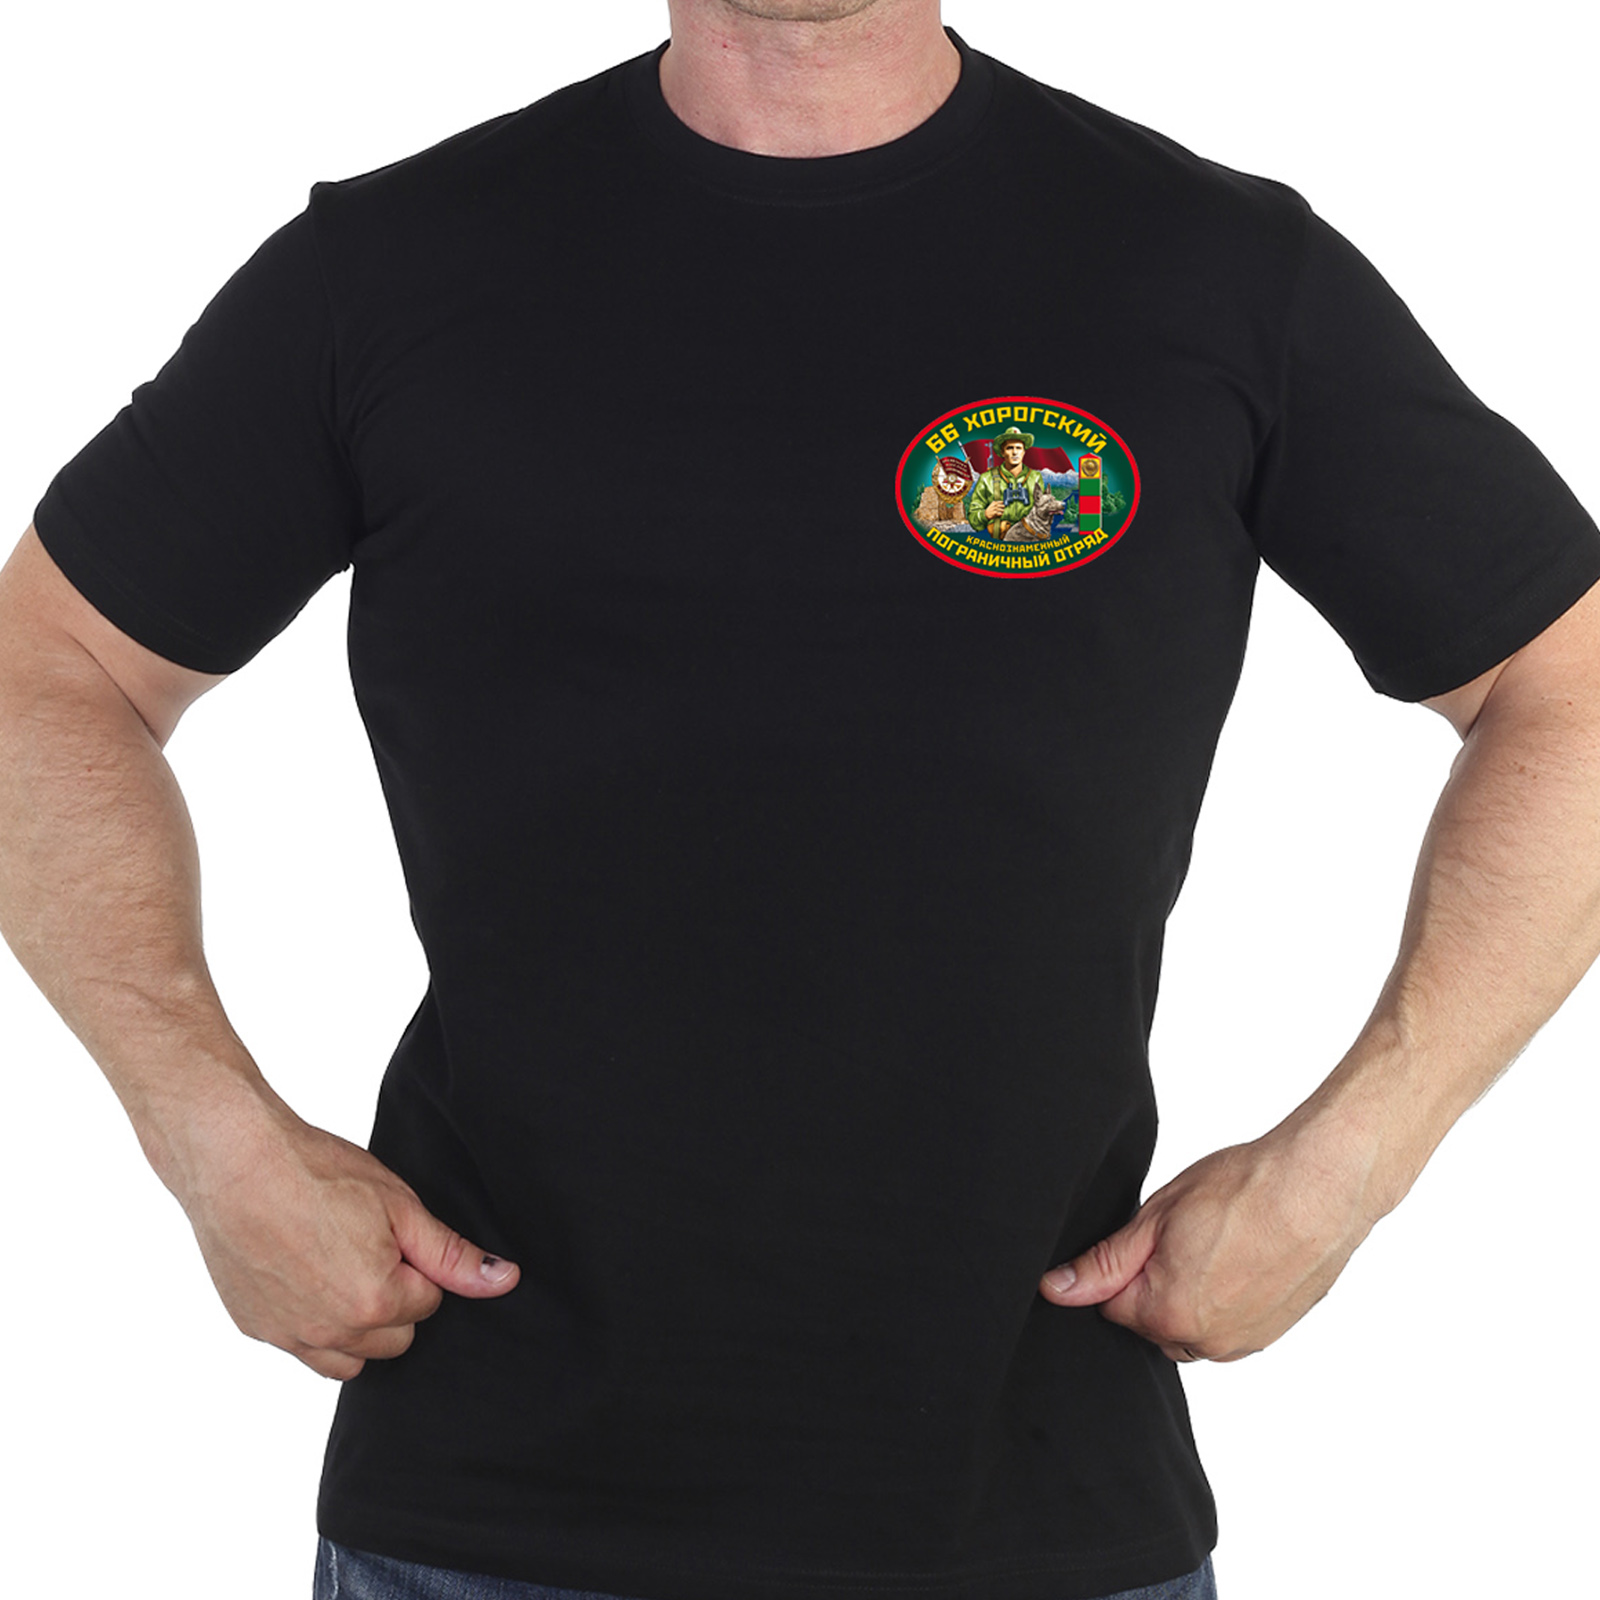 Недорогие подарки пограничникам – крутая футболка 66-ой Хорогский погранотряд